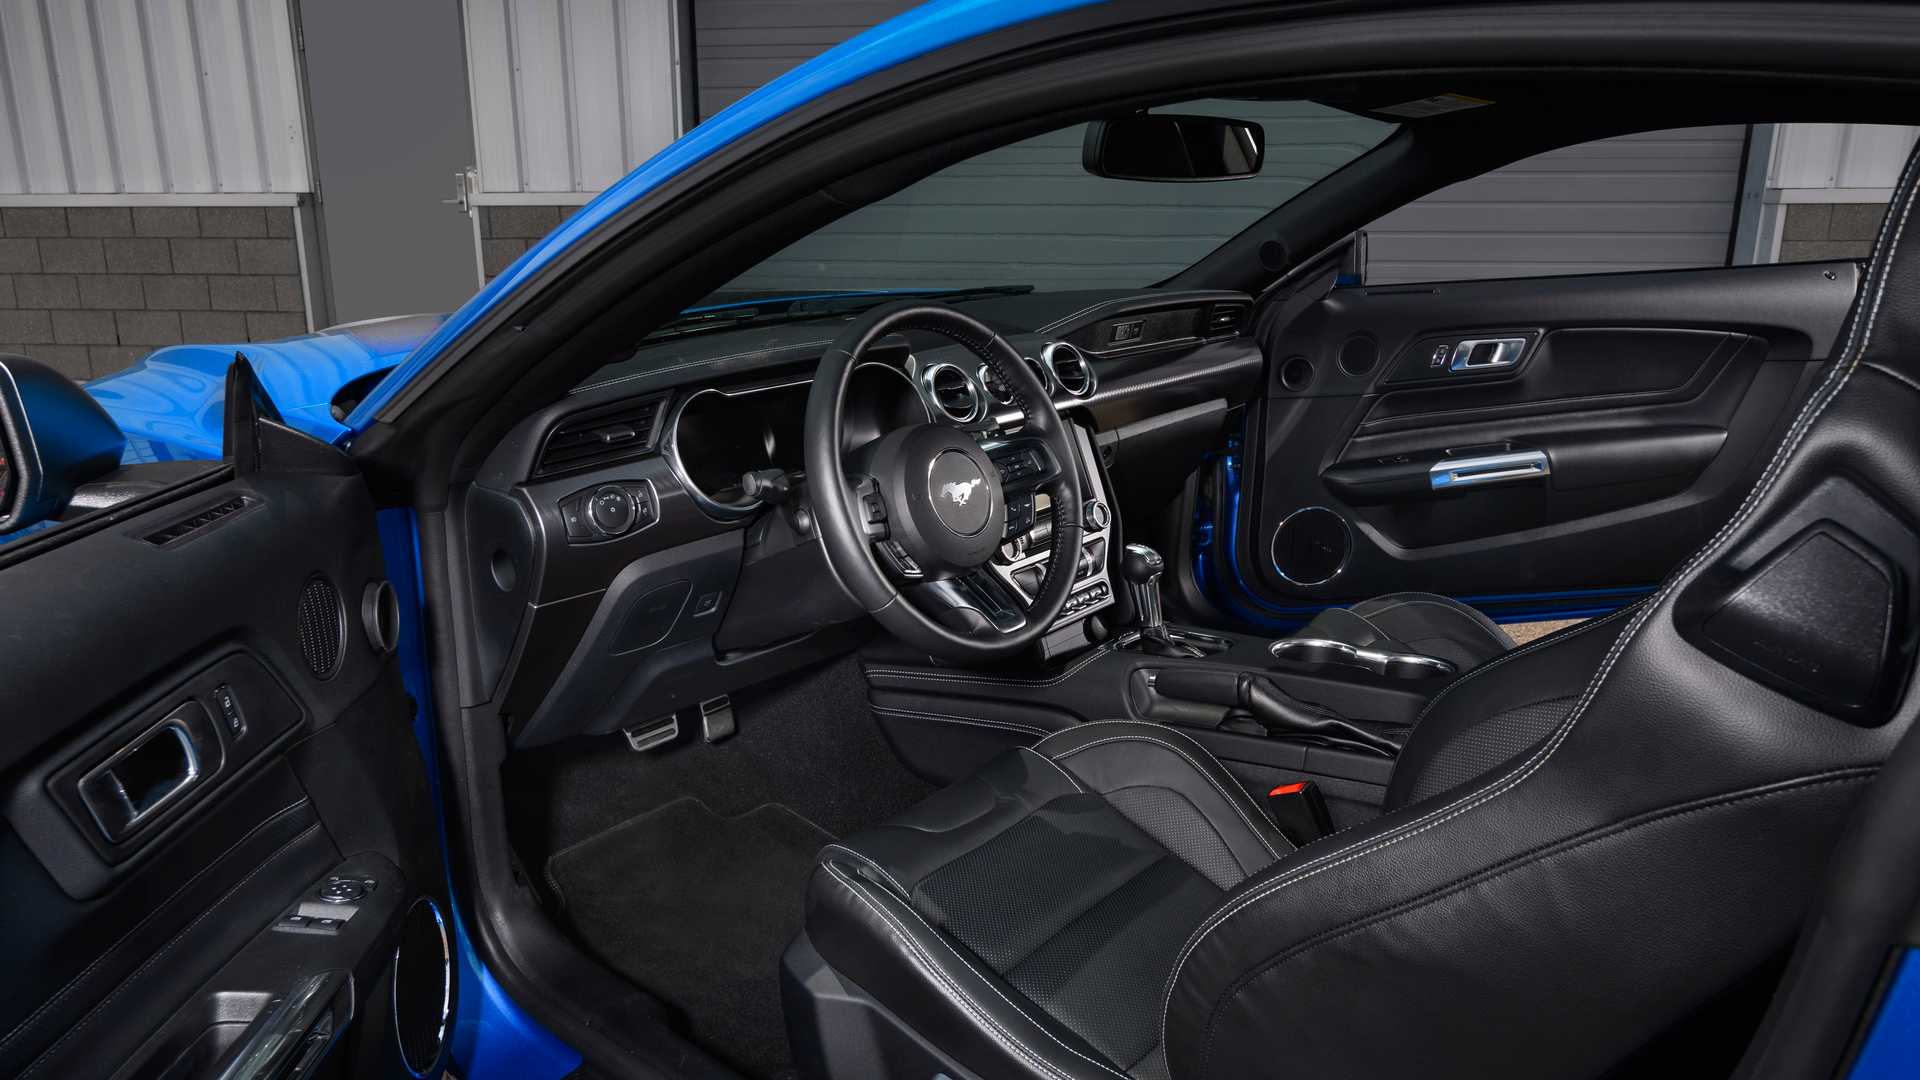  Cabine do Mustang tem diversos equipamentos de carros de luxo, mas lá nos EUA ele pode ser "depenado"